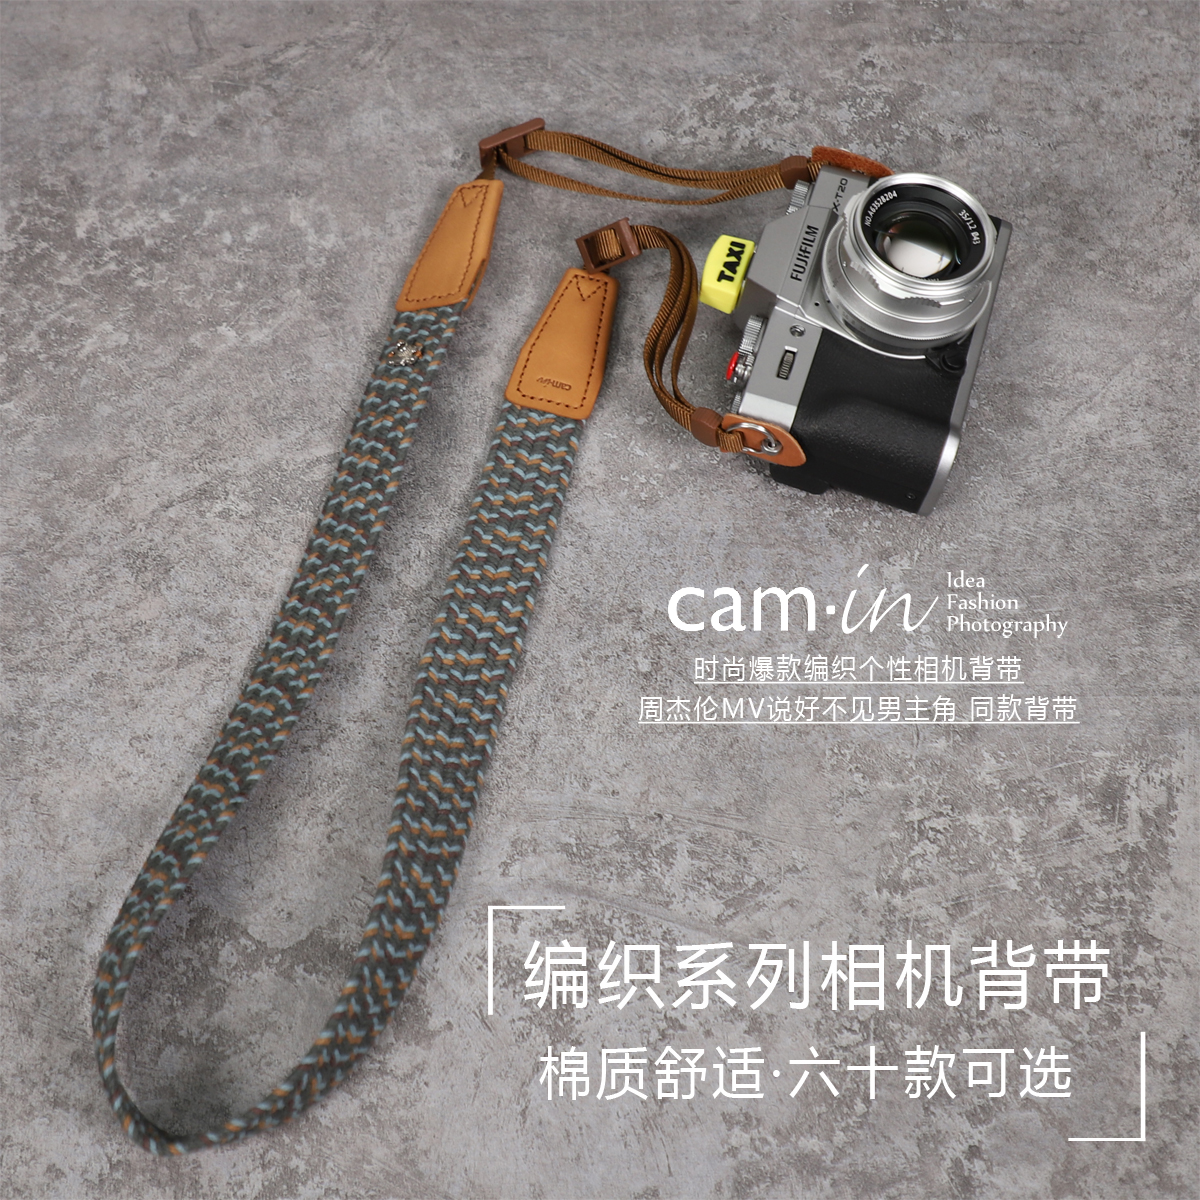 cam-in 时尚编织相机背带摄影斜跨减压单反周杰伦MV同款微单背带